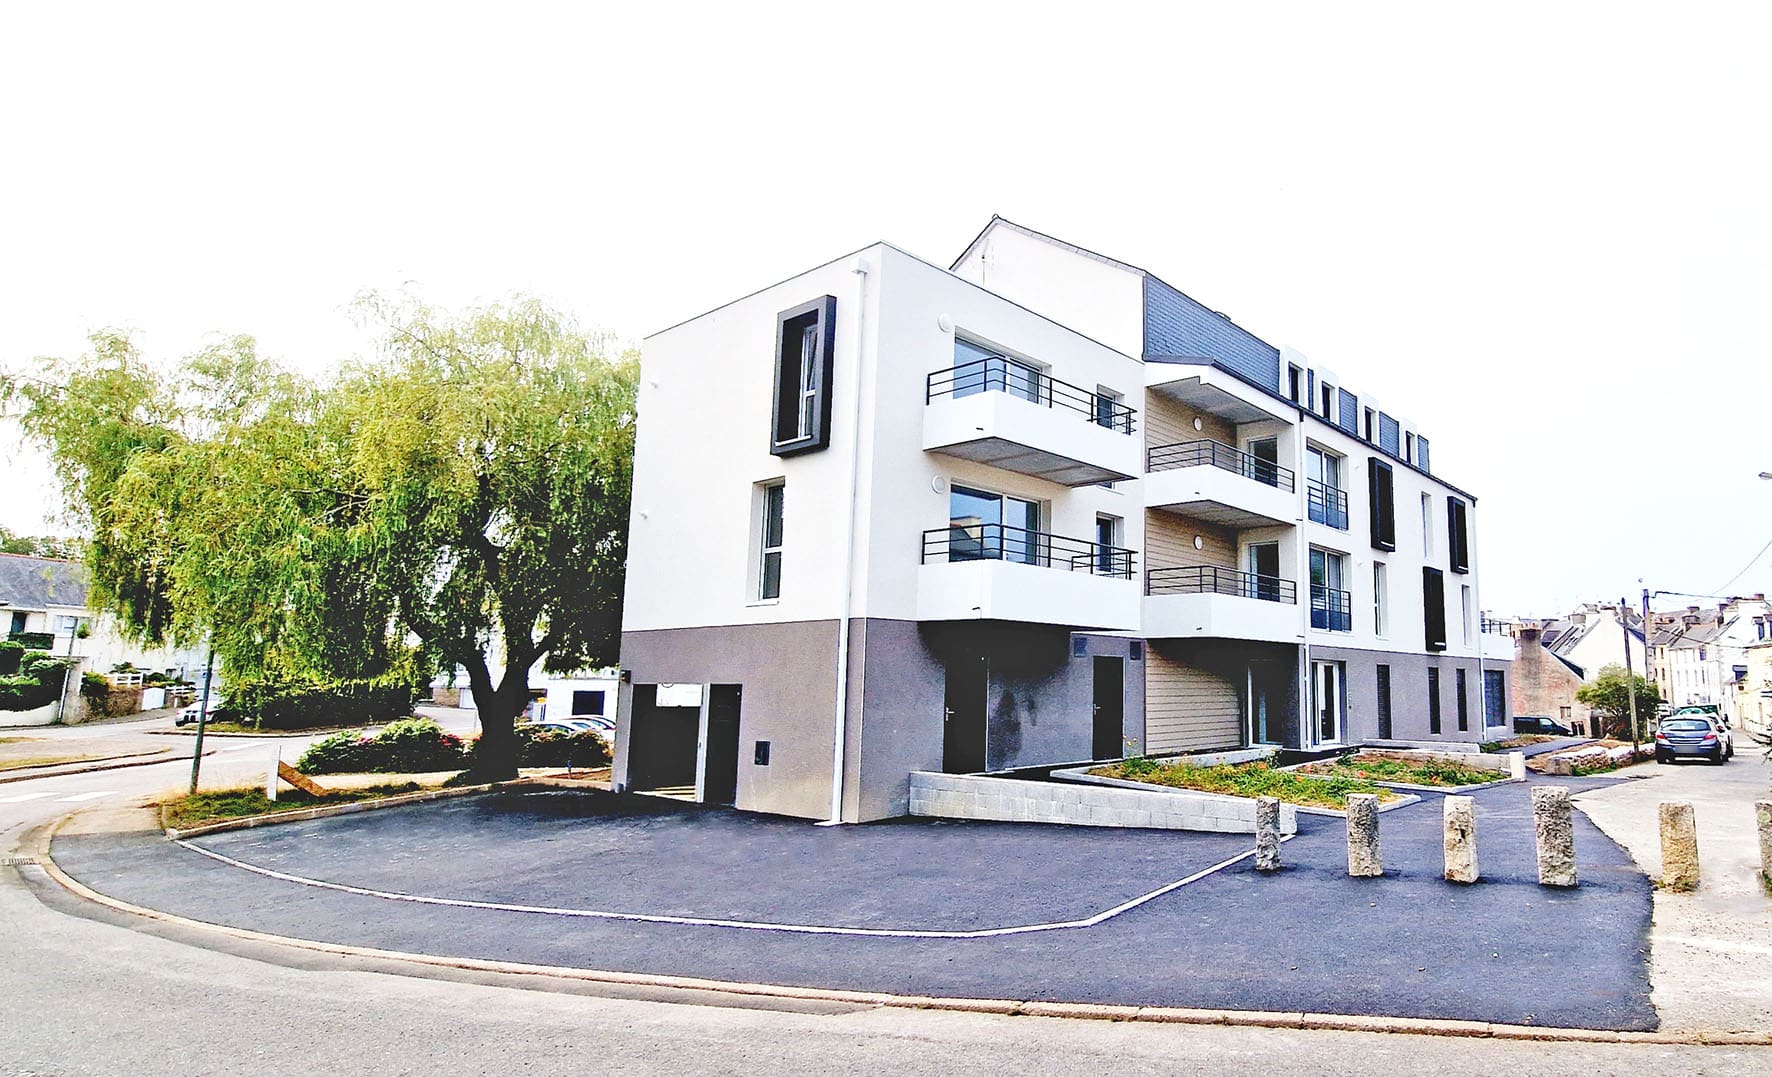 Livraison de douze appartements en location accession à Concarneau